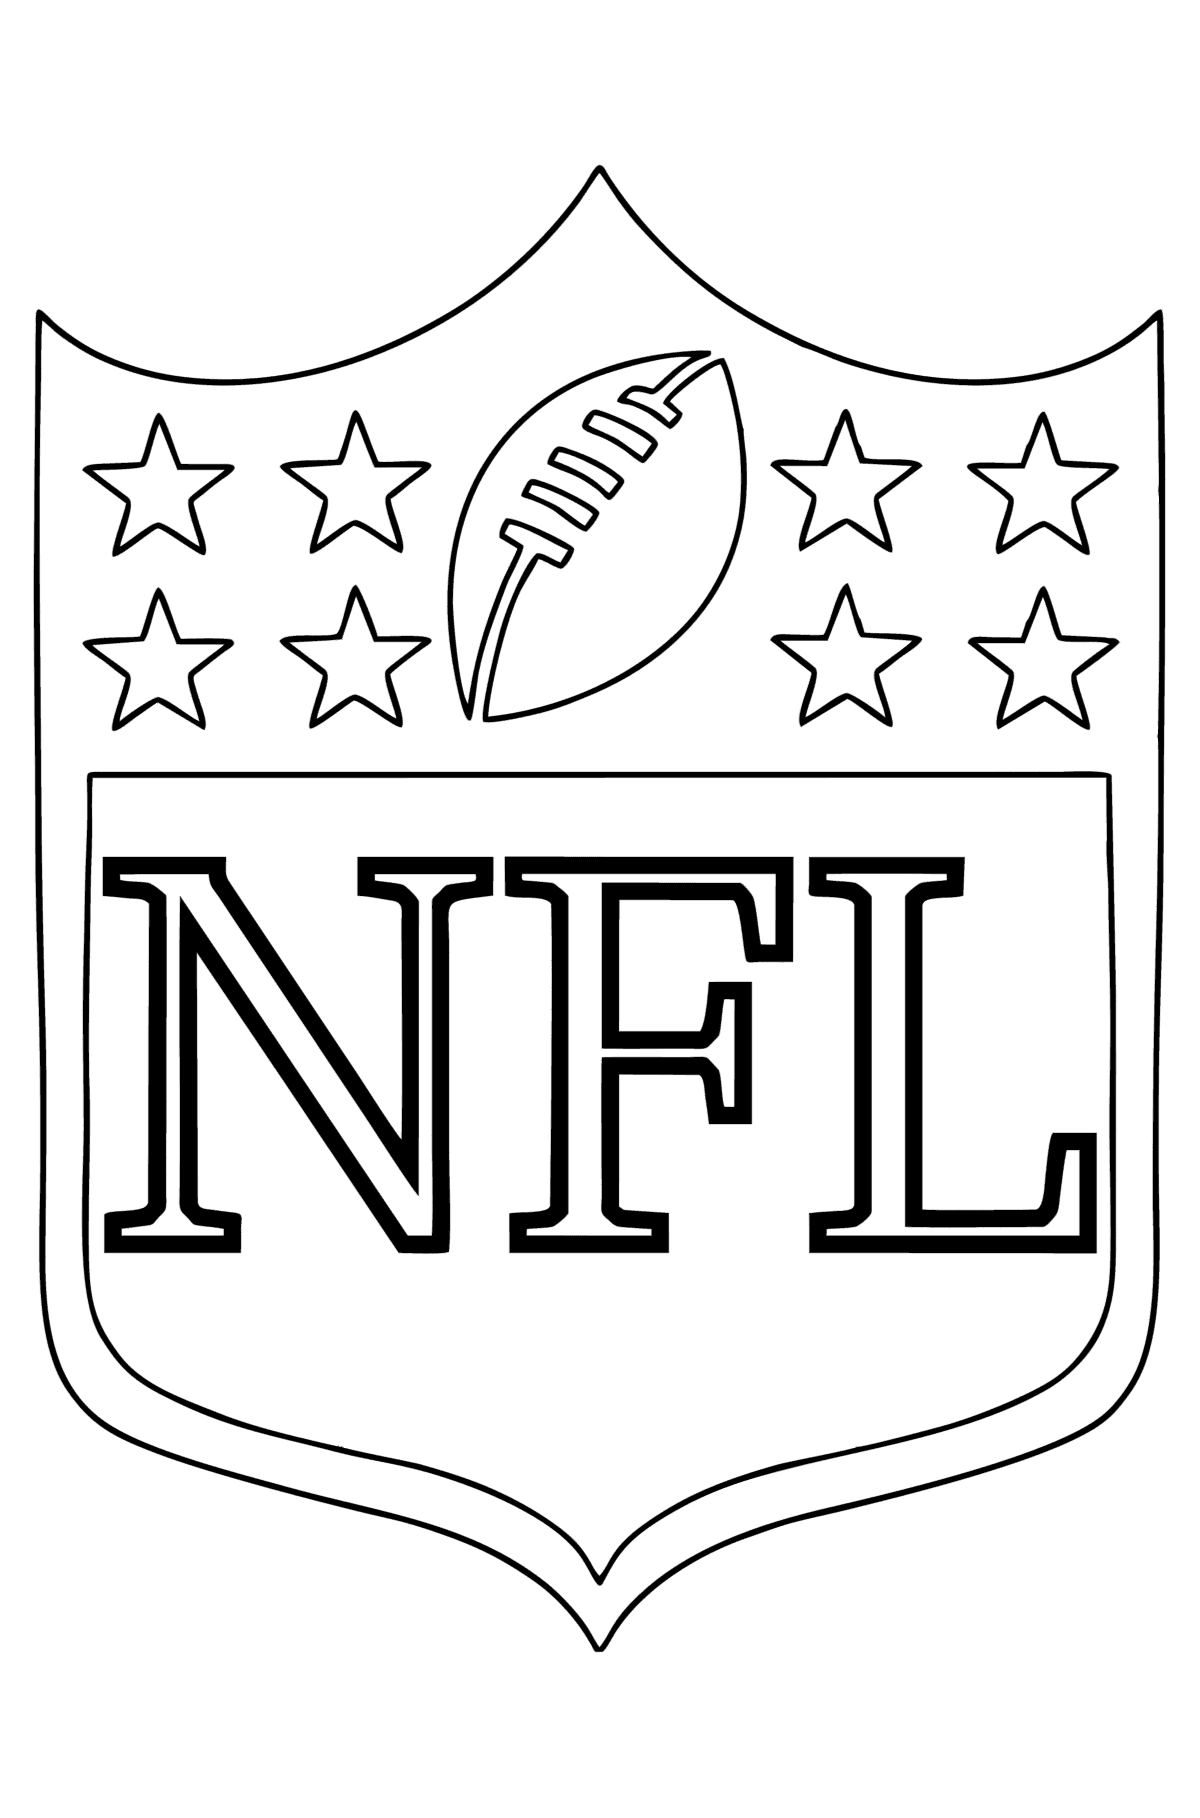 Dibujo Logotipo de la NFL para colorear - Dibujos para Colorear para Niños